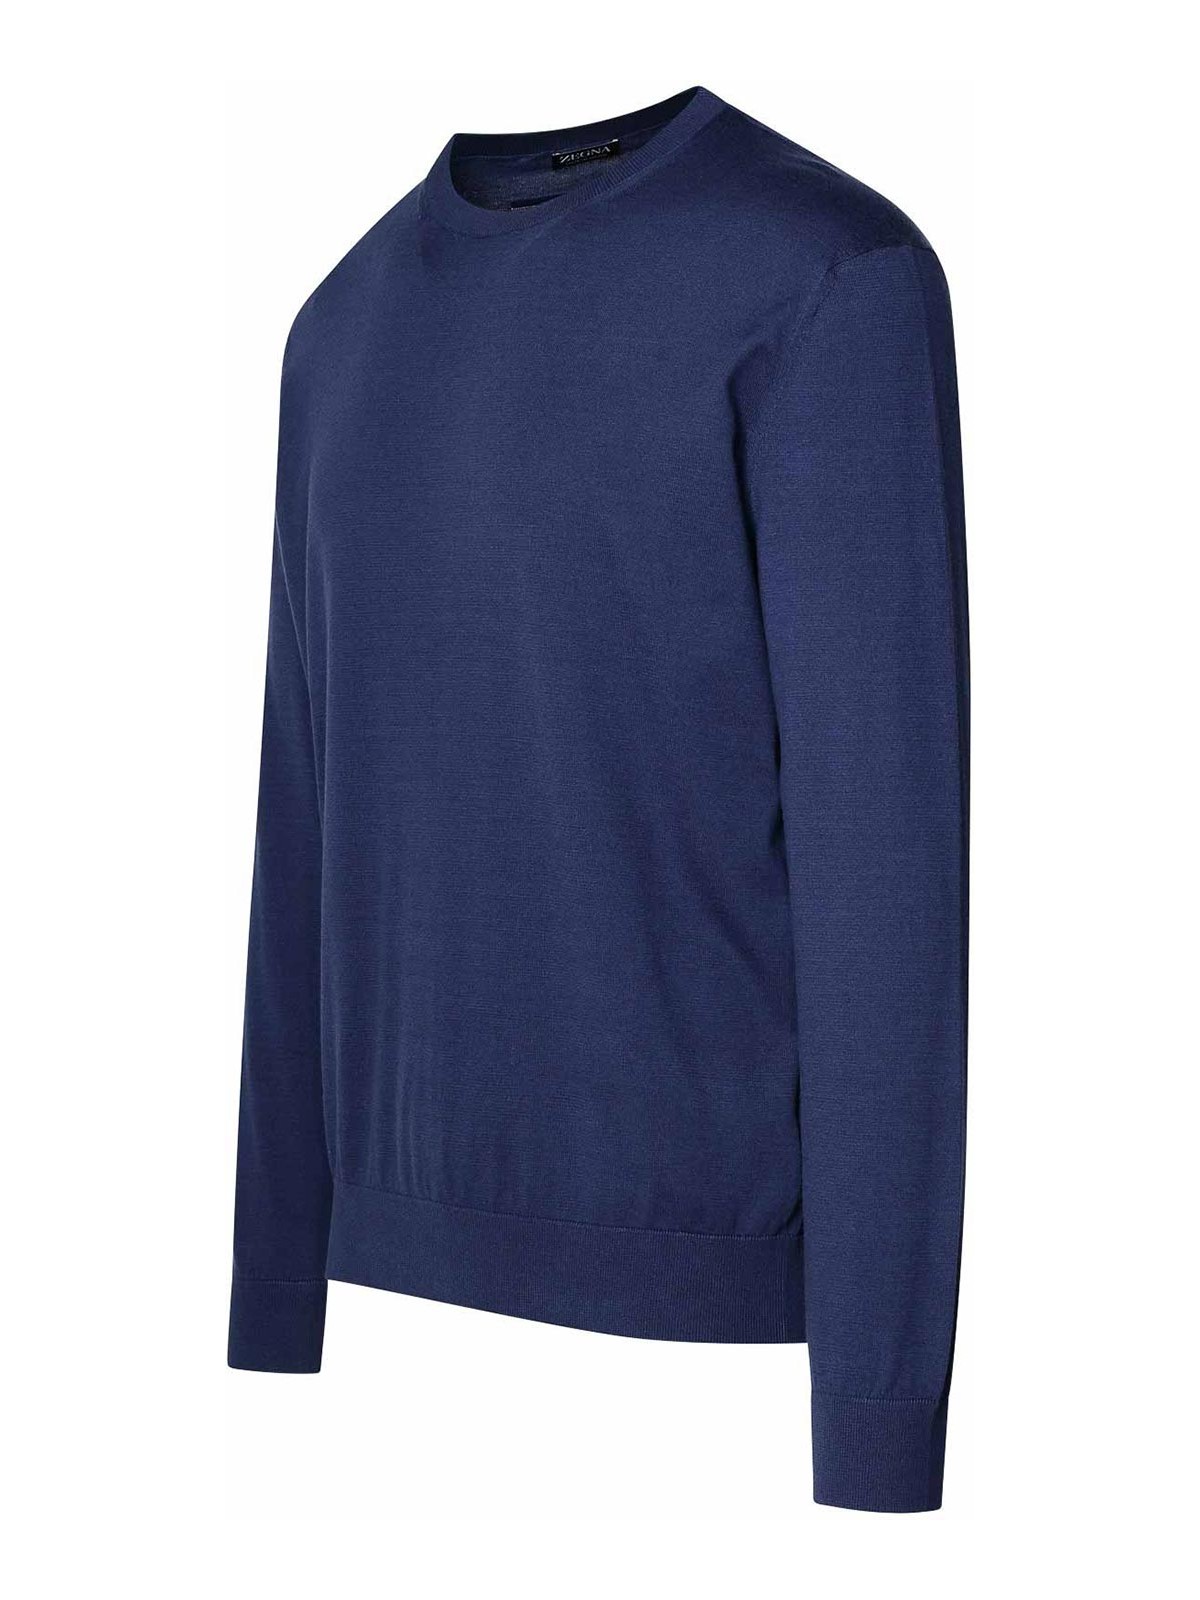 Shop Zegna Blue Cotton Sweater